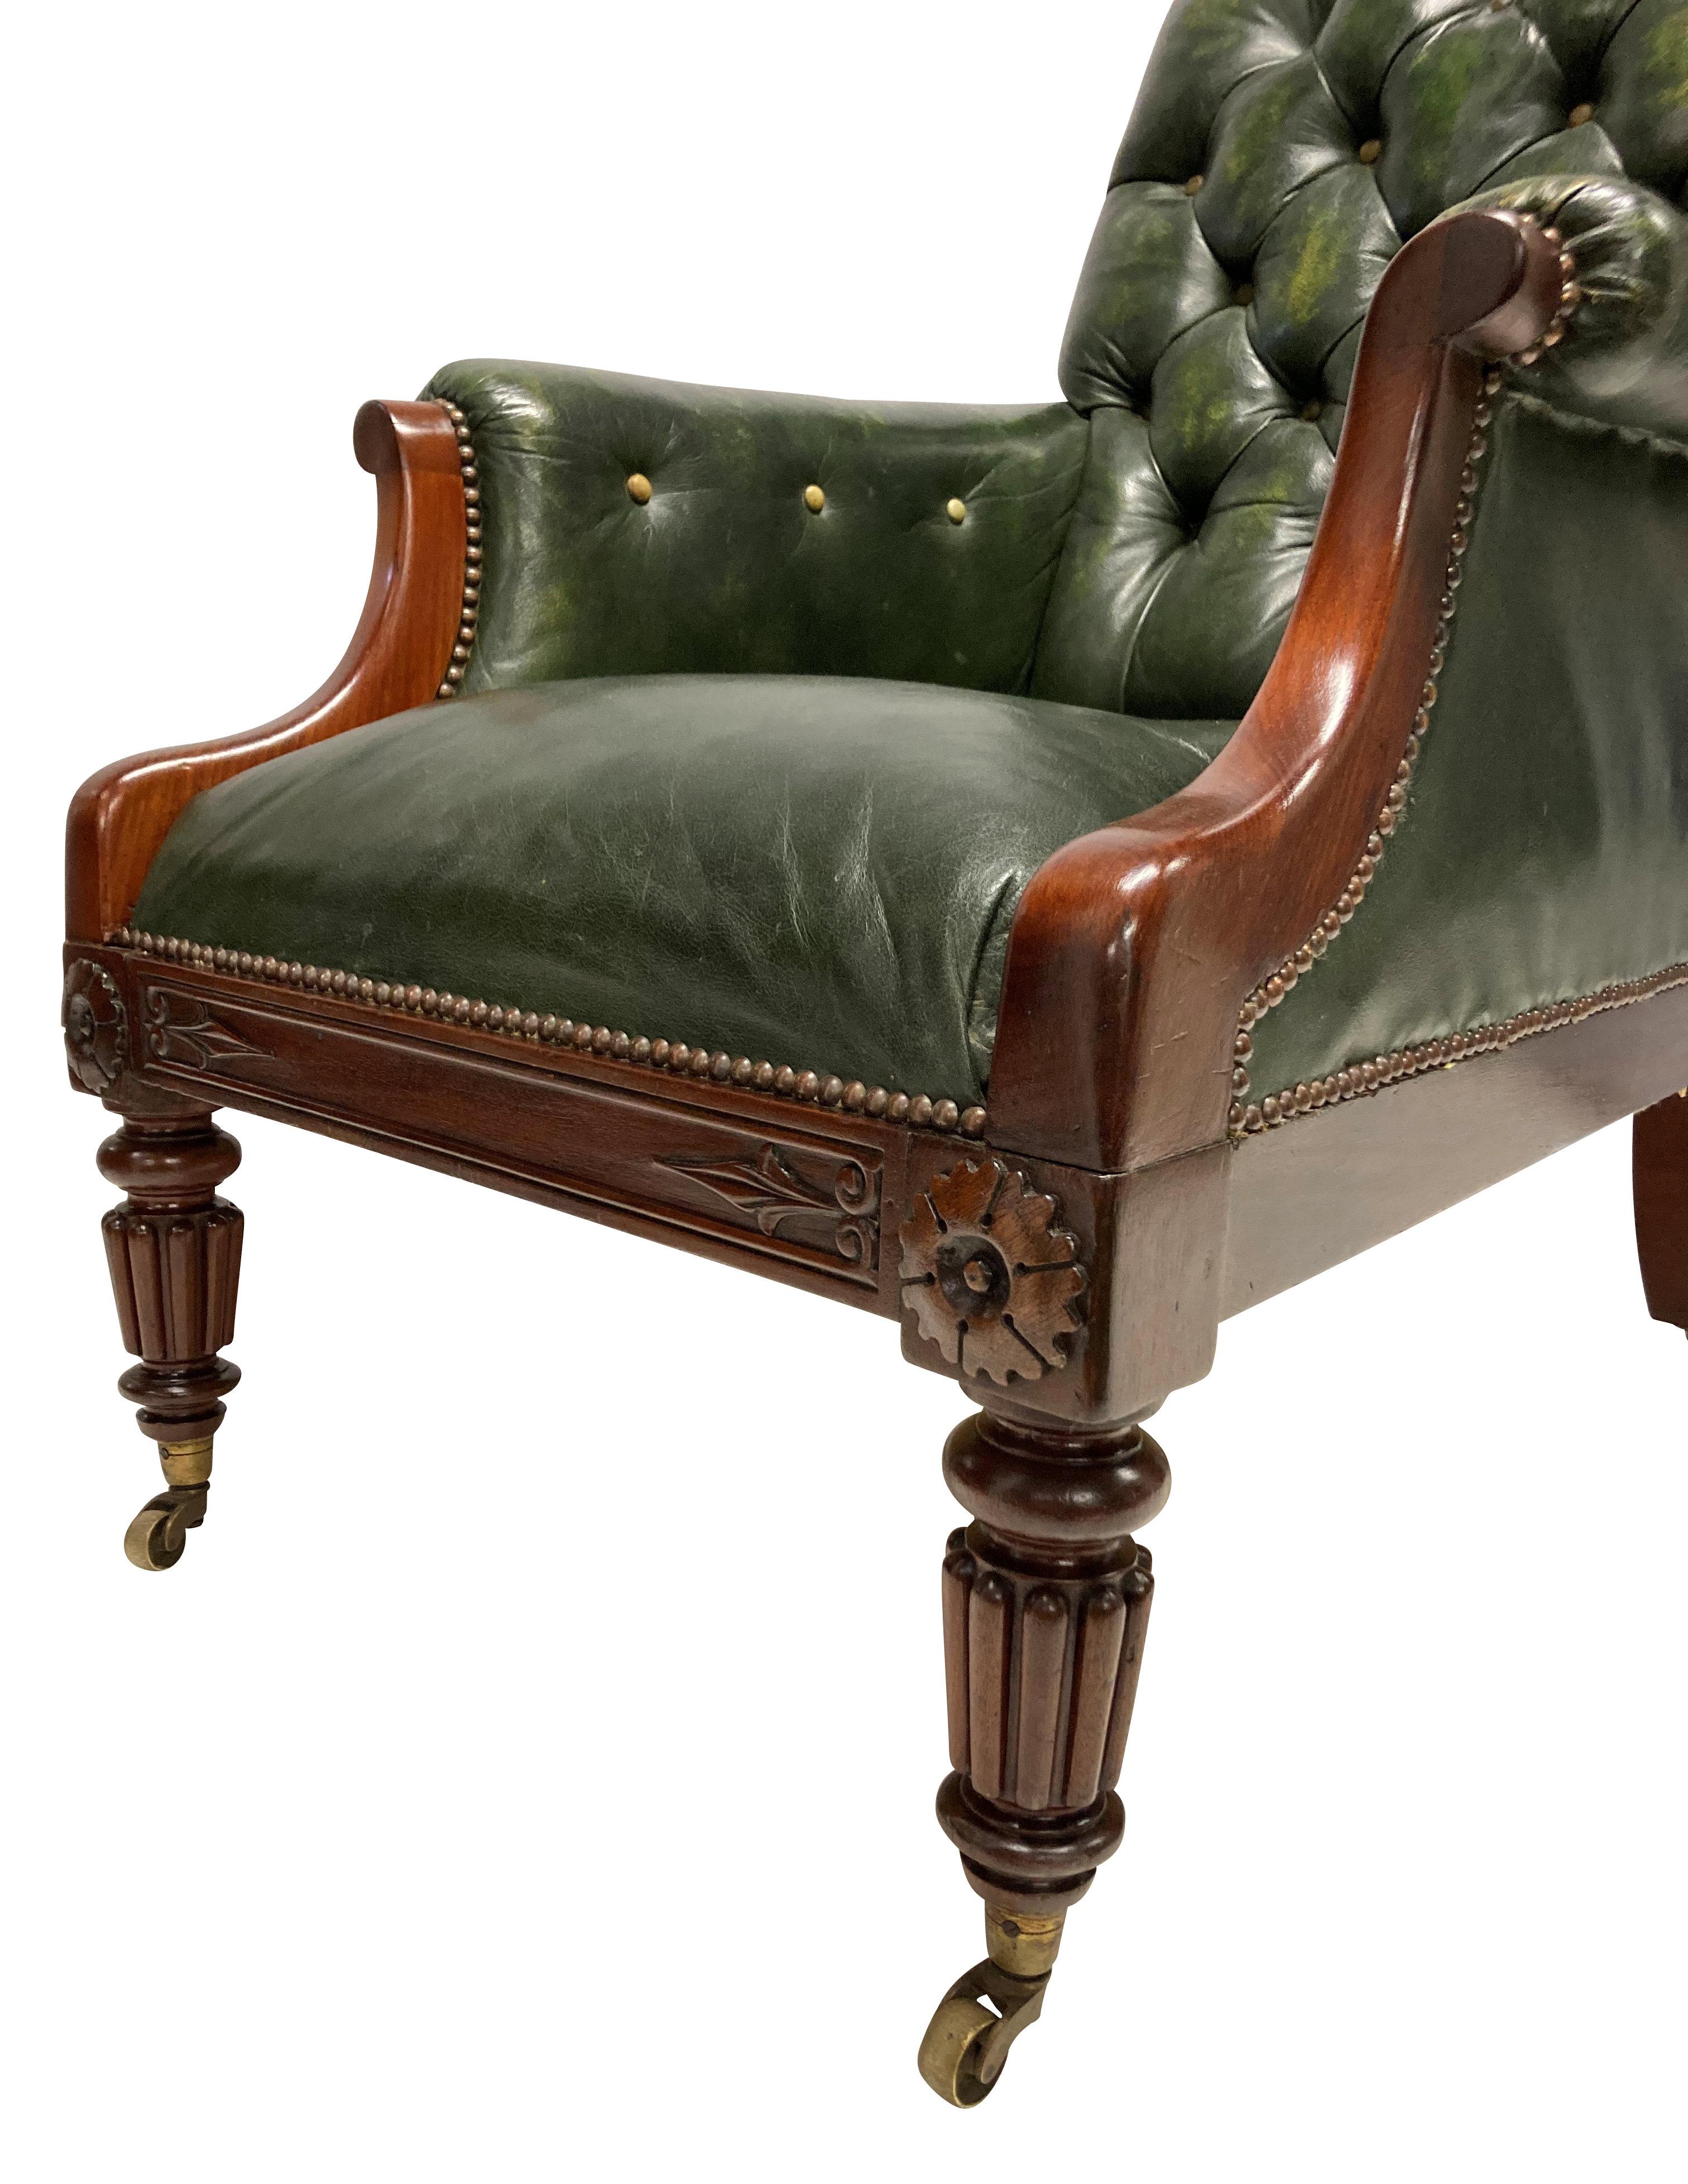 Une chaise de bibliothèque anglaise en acajou William IV, avec des pieds cannelés et une décoration en forme d'anthemion. Il a été tapissé de cuir vert, avec des boutons en cuir chamois.